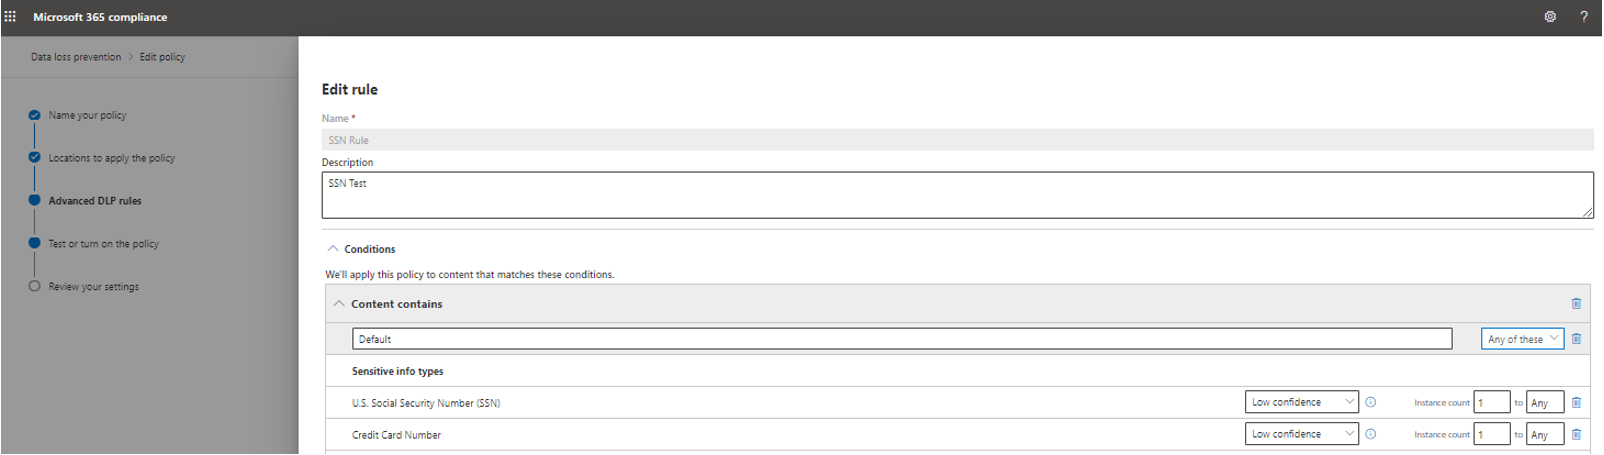 Captura de tela da regra SSN configurada para ter a detecção com base em tipos de informações confidenciais.